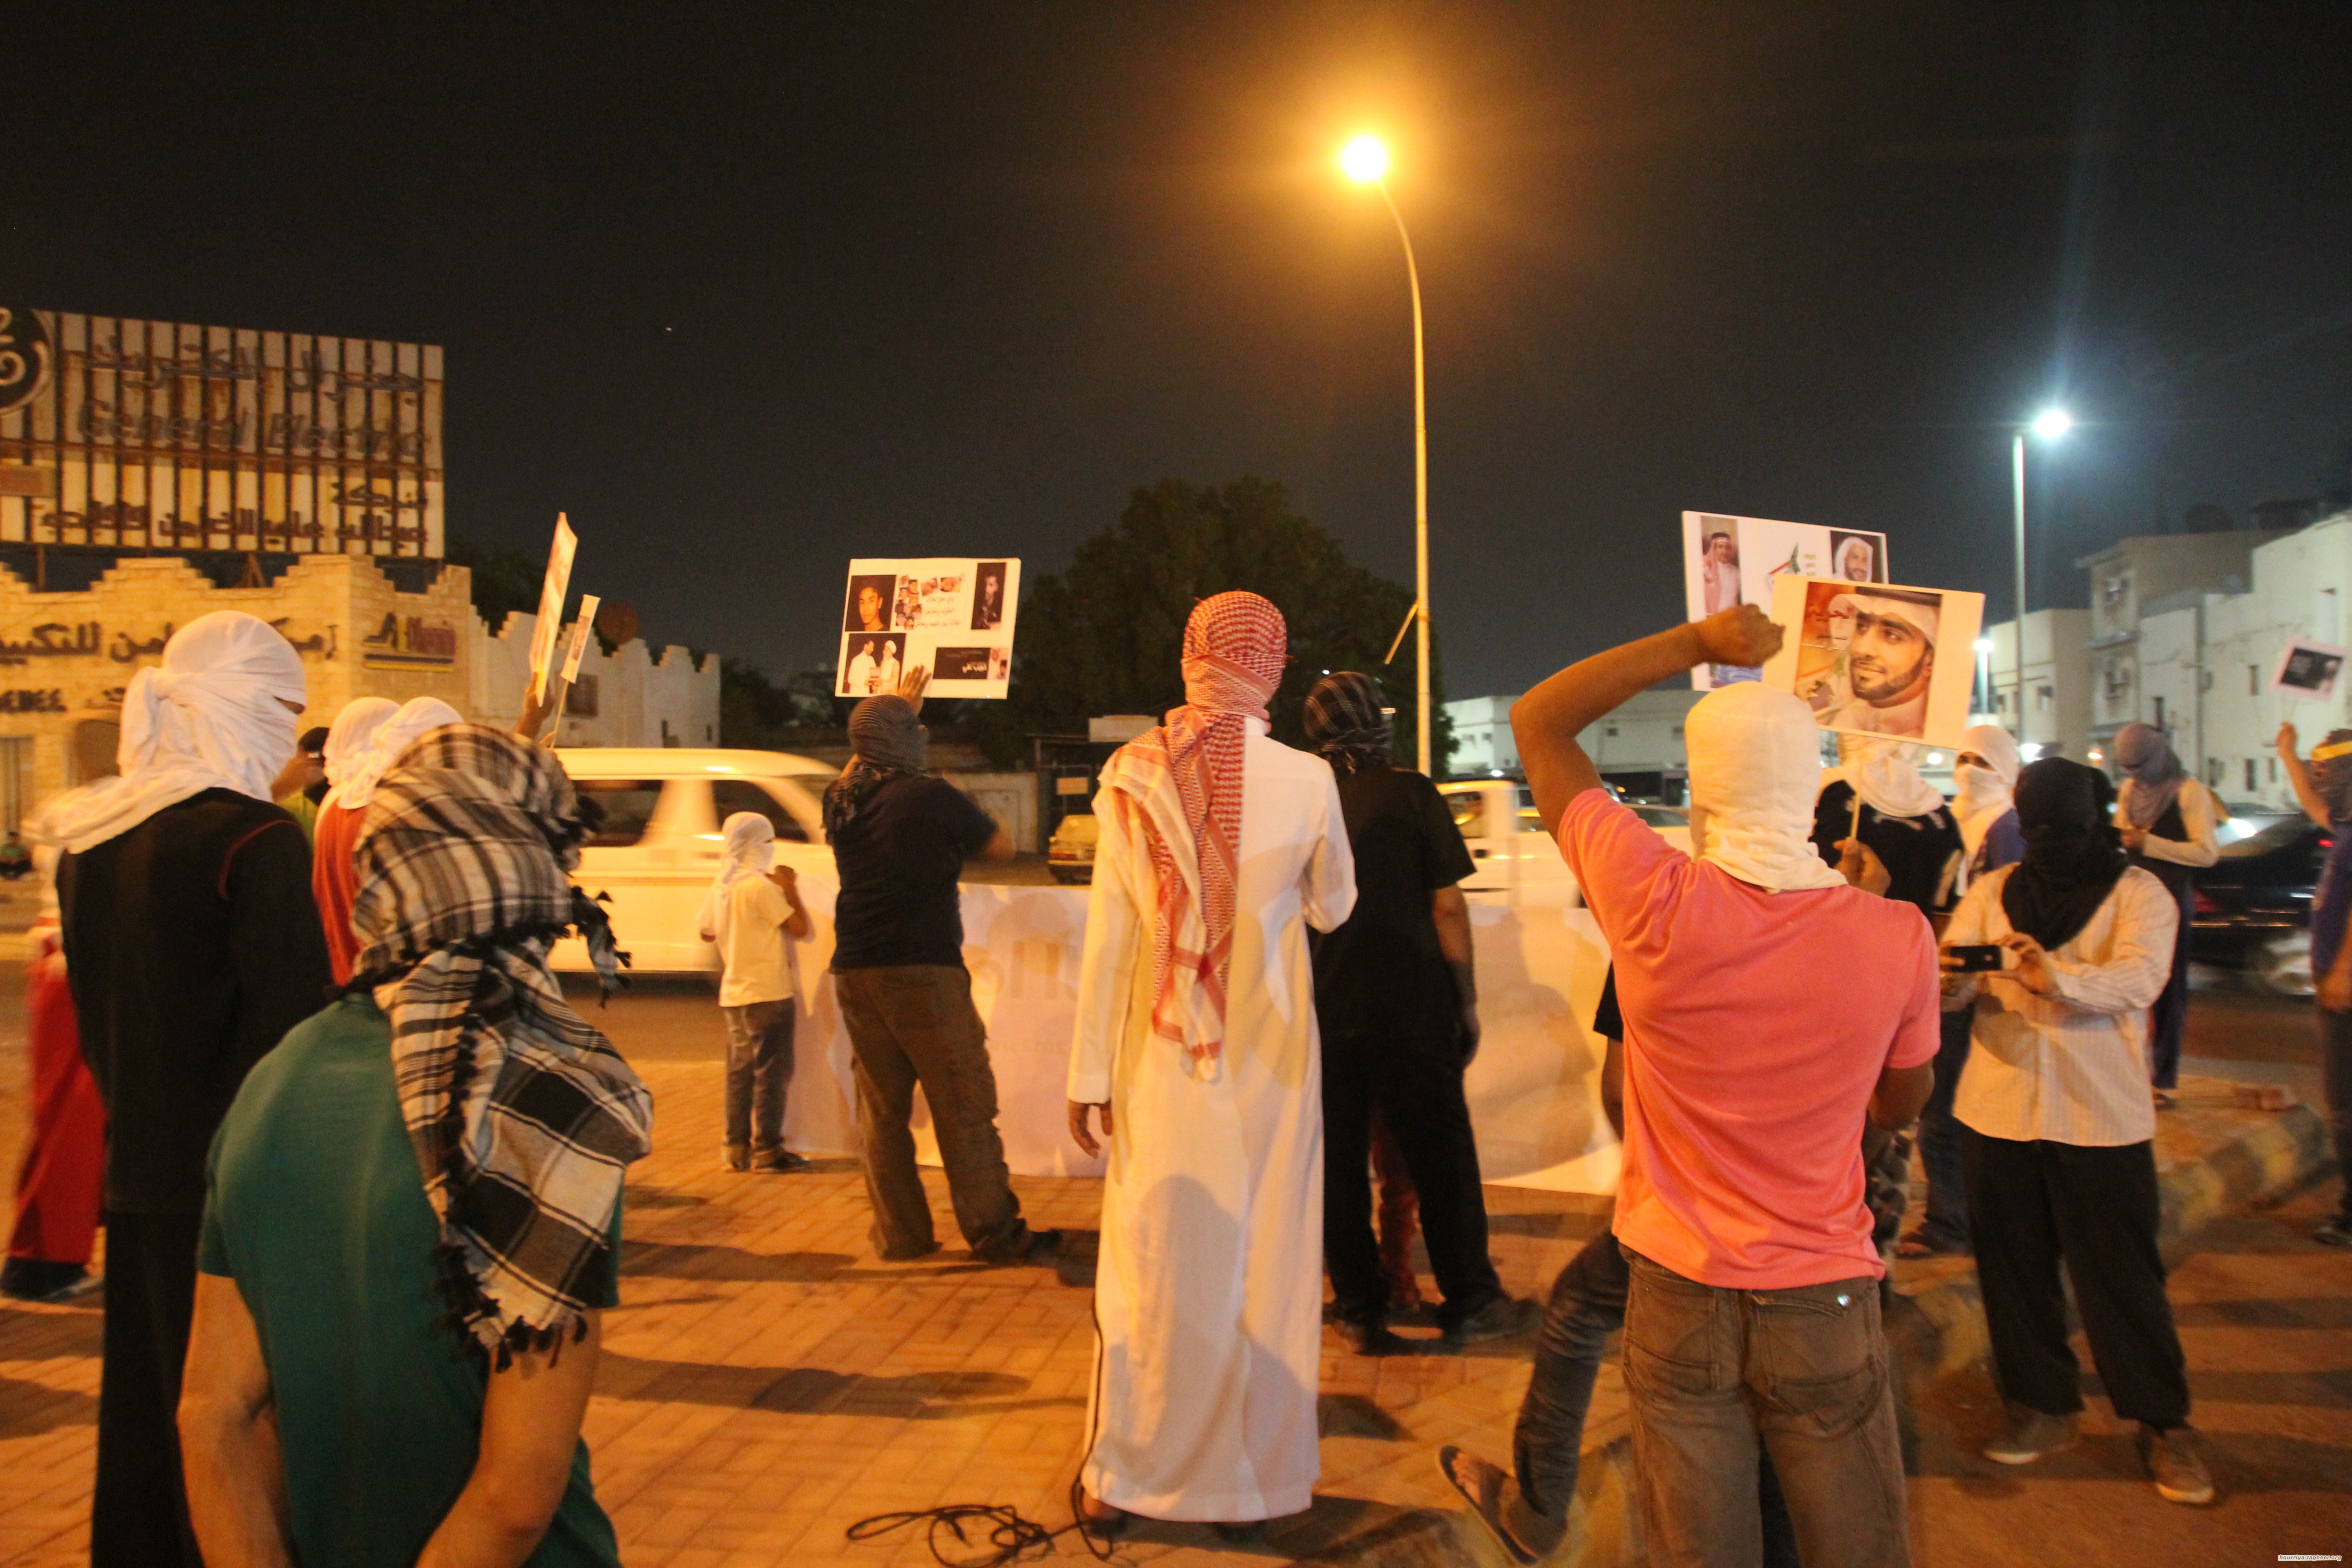 المظاهرات محرمة في الشوارع السعودية: لا مكان للتعبير عن الرأي هنا